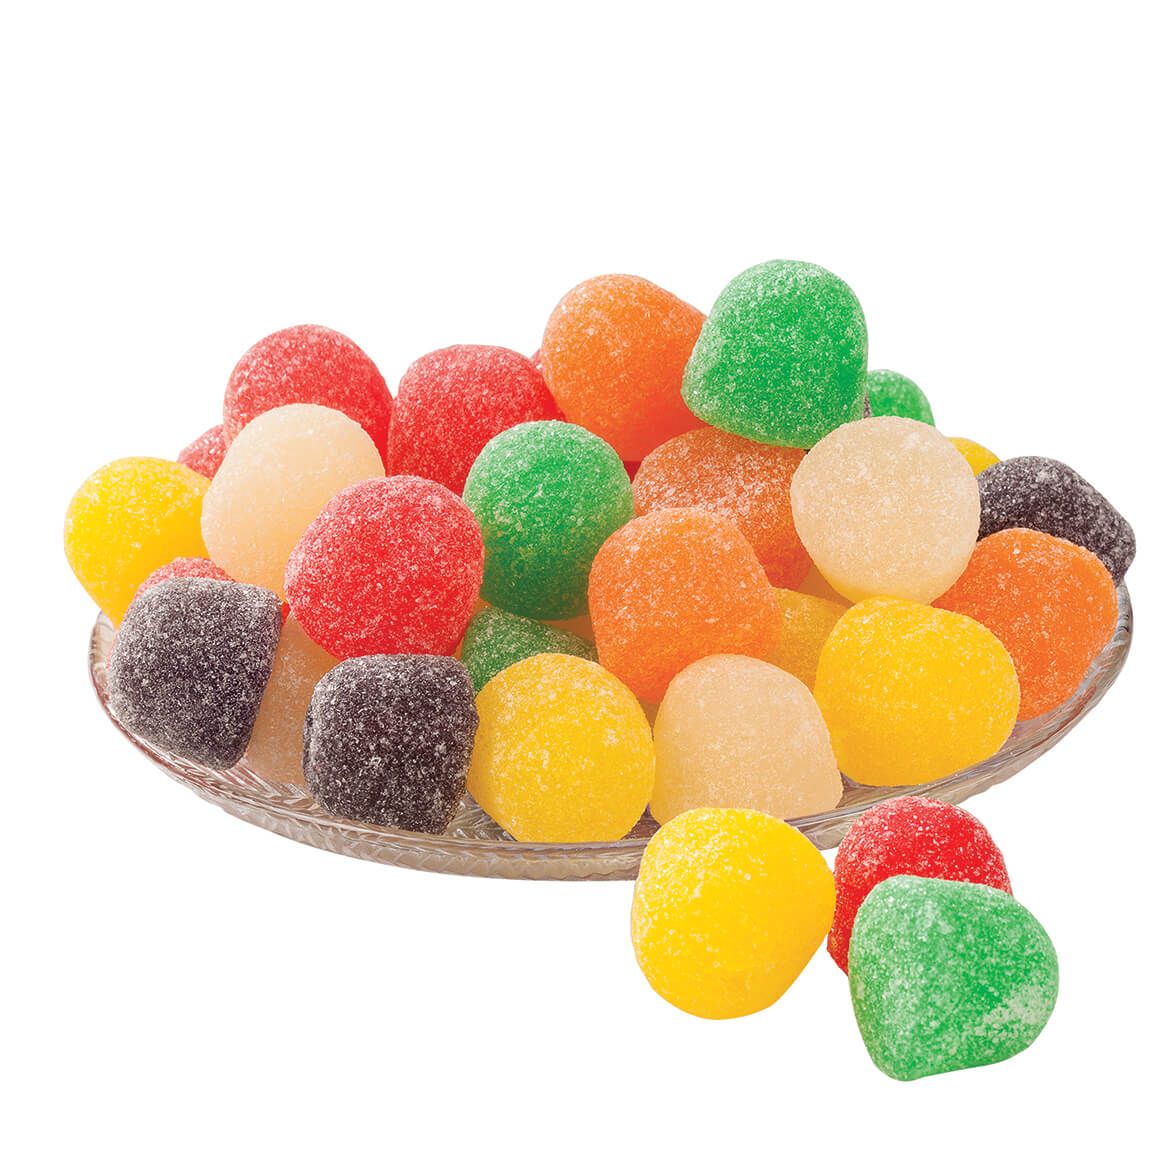 Giant Gum Drops 24 oz. + '-' + 363459